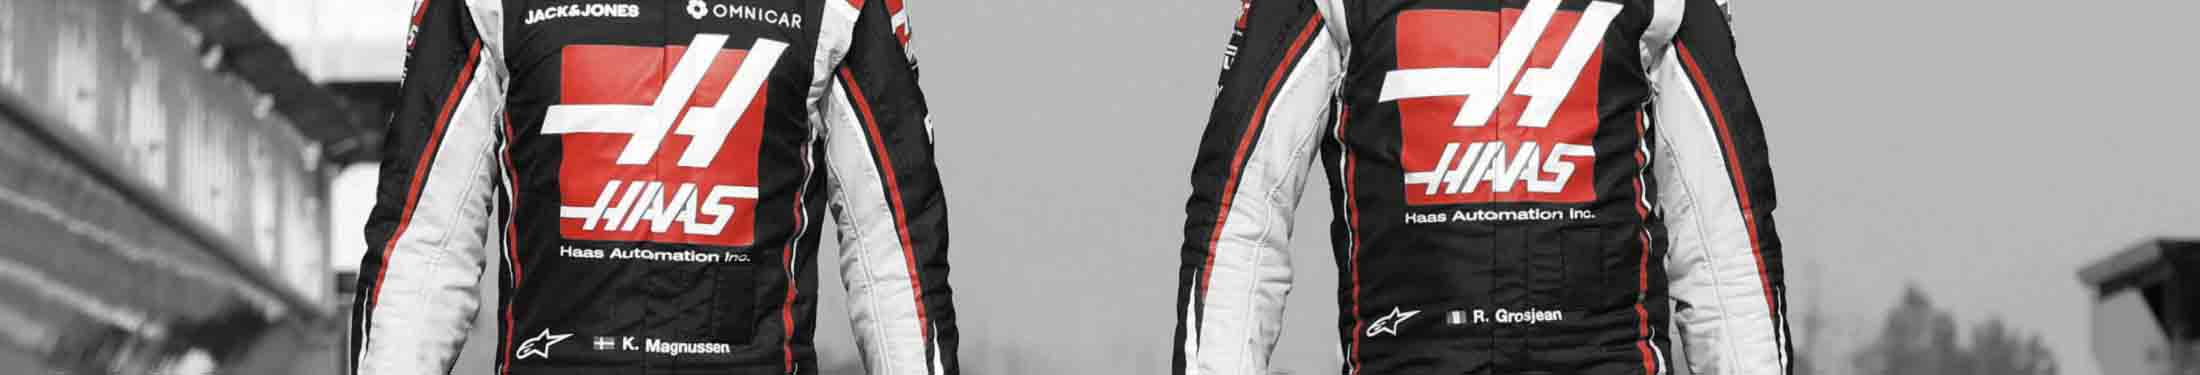 Förnyelse i Haas F1 Team, båda förarna lämnar